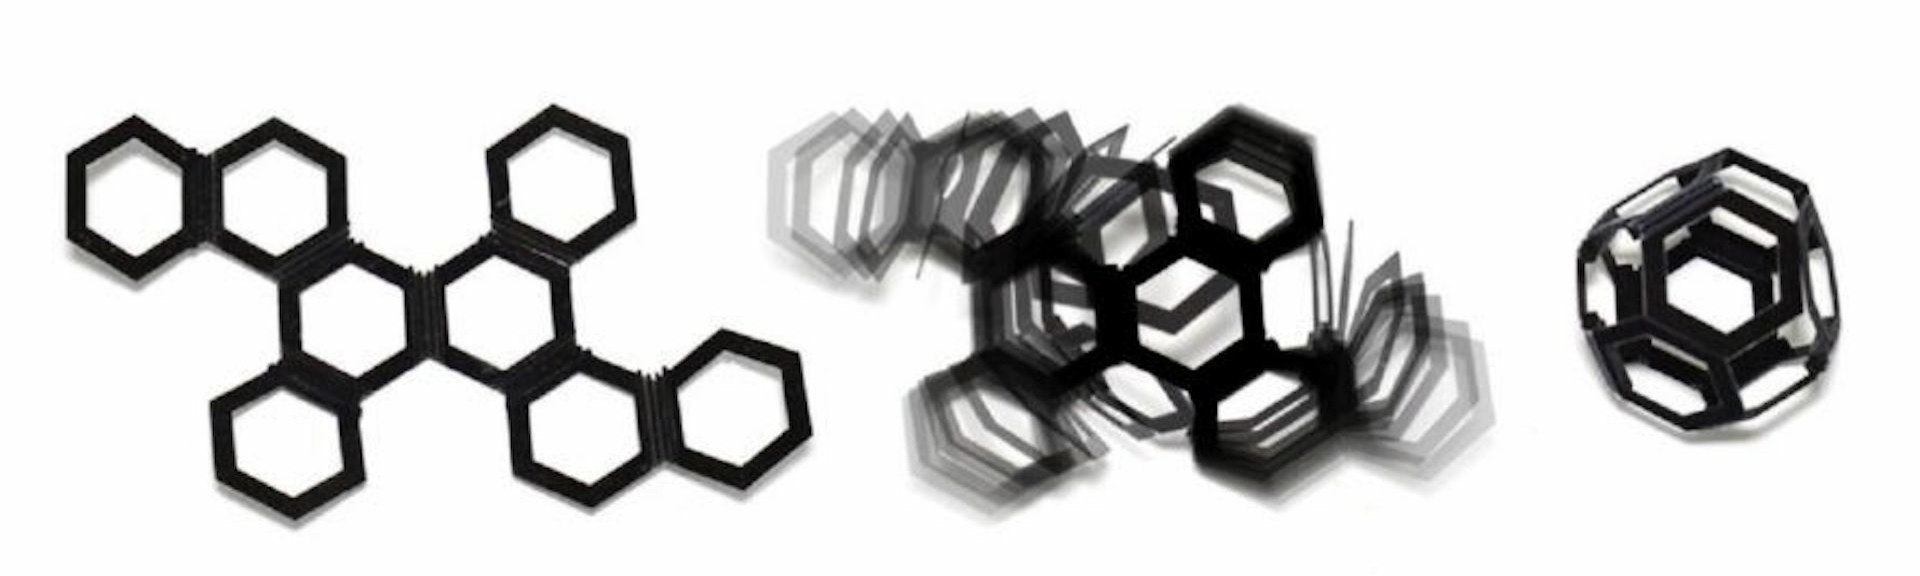 4d-printing-octahedron-Christan-kromme-Speaker-Futurist